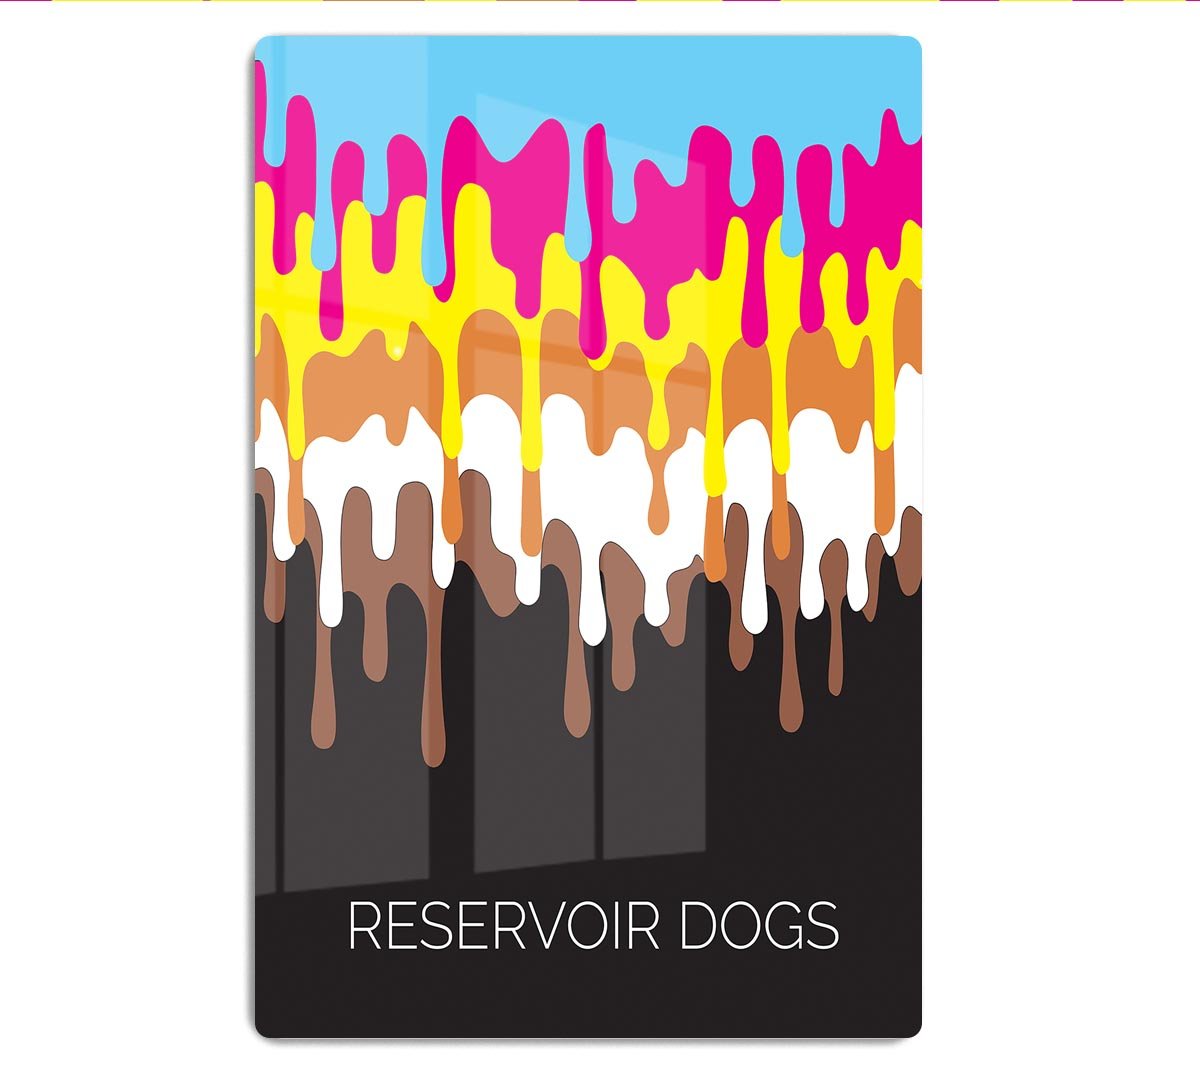 Reservoir Dogs Minimal Movie HD Metal Print